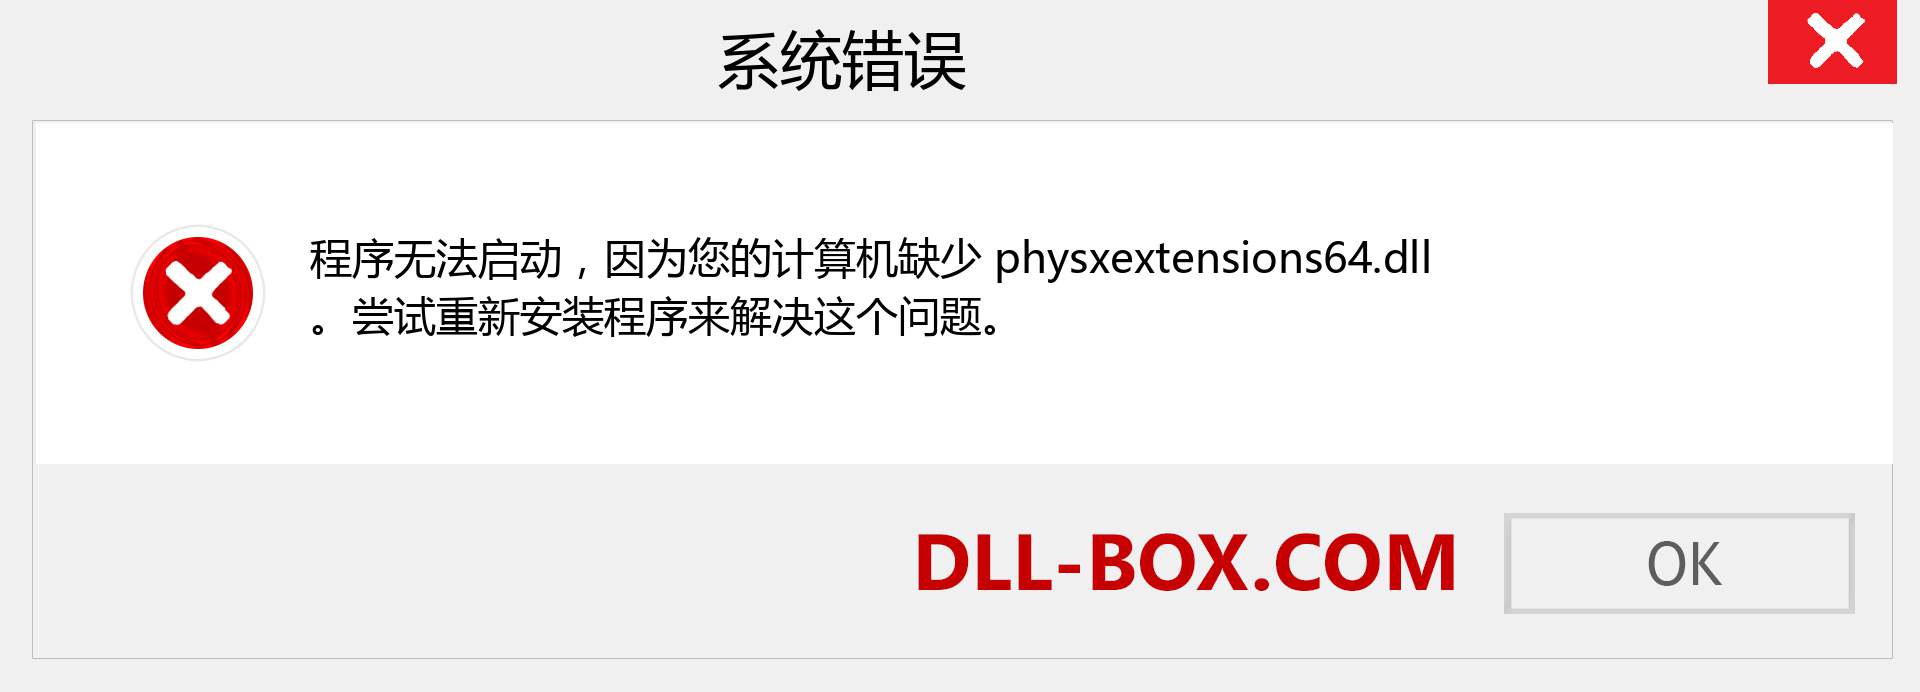 physxextensions64.dll 文件丢失？。 适用于 Windows 7、8、10 的下载 - 修复 Windows、照片、图像上的 physxextensions64 dll 丢失错误